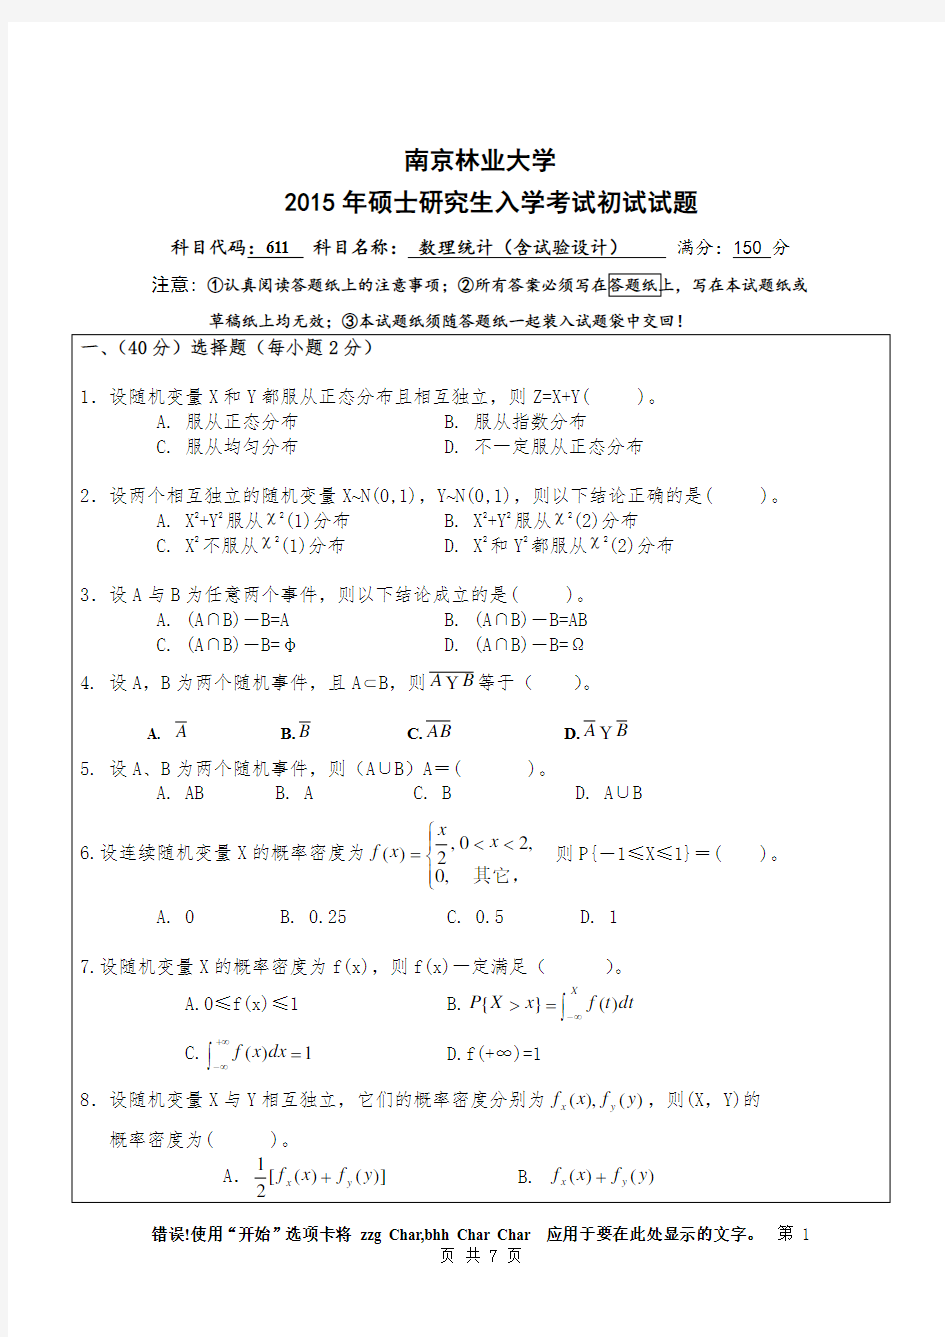 南京林业大学数理统计(含试验设计)2015年考研真题